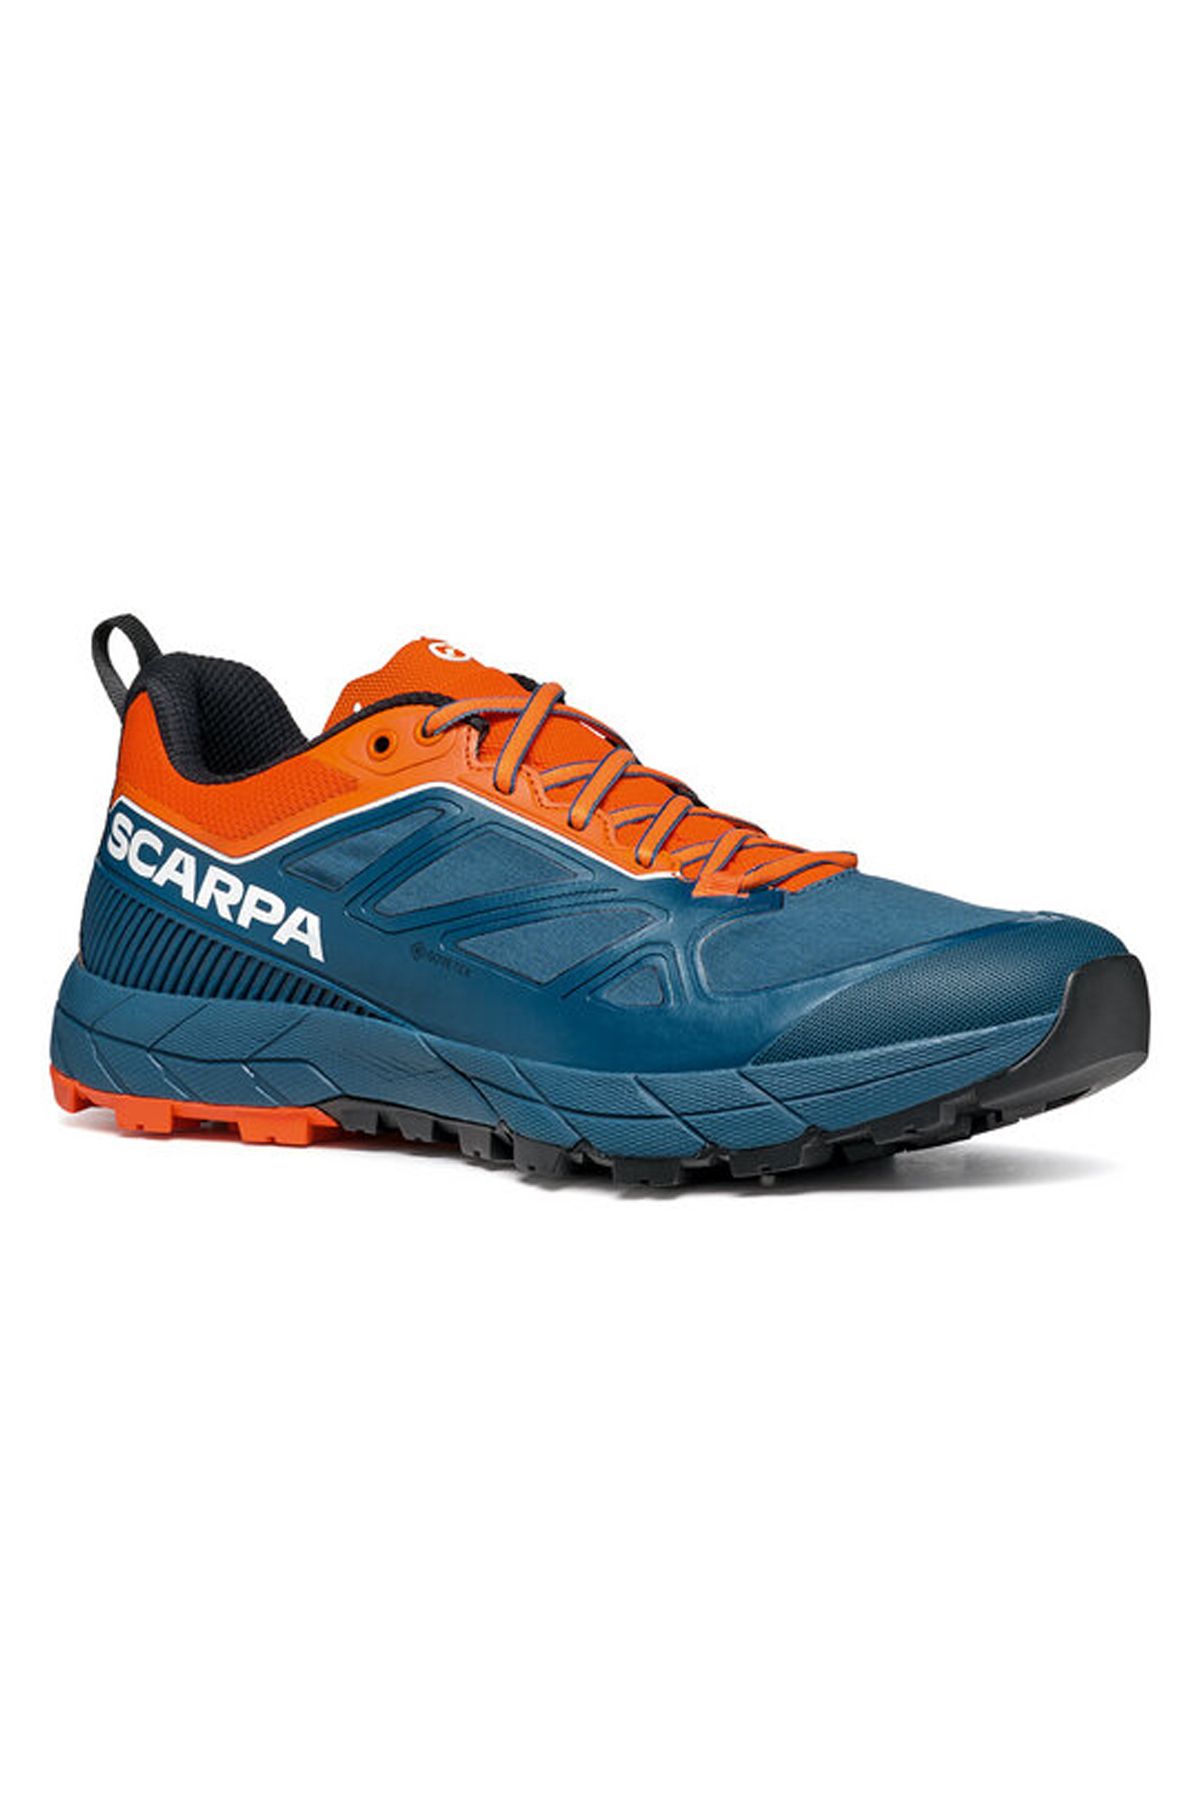 scarpa Rapid Gore-Tex Erkek Koşu Ayakkabısı